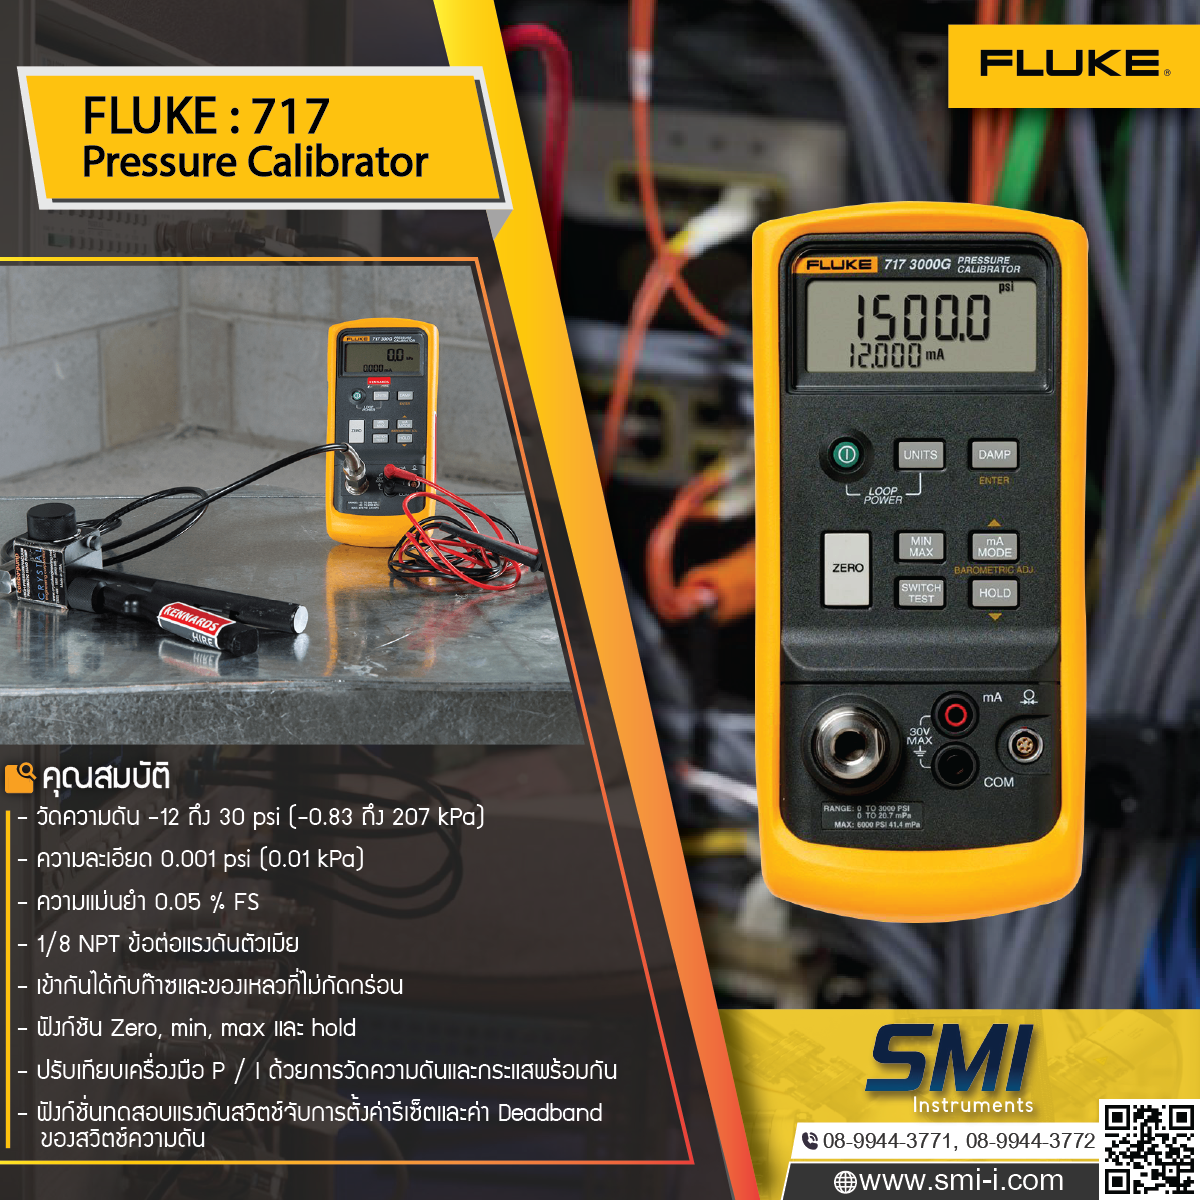 FLUKE - 717 Pressure Calibrator graphic information